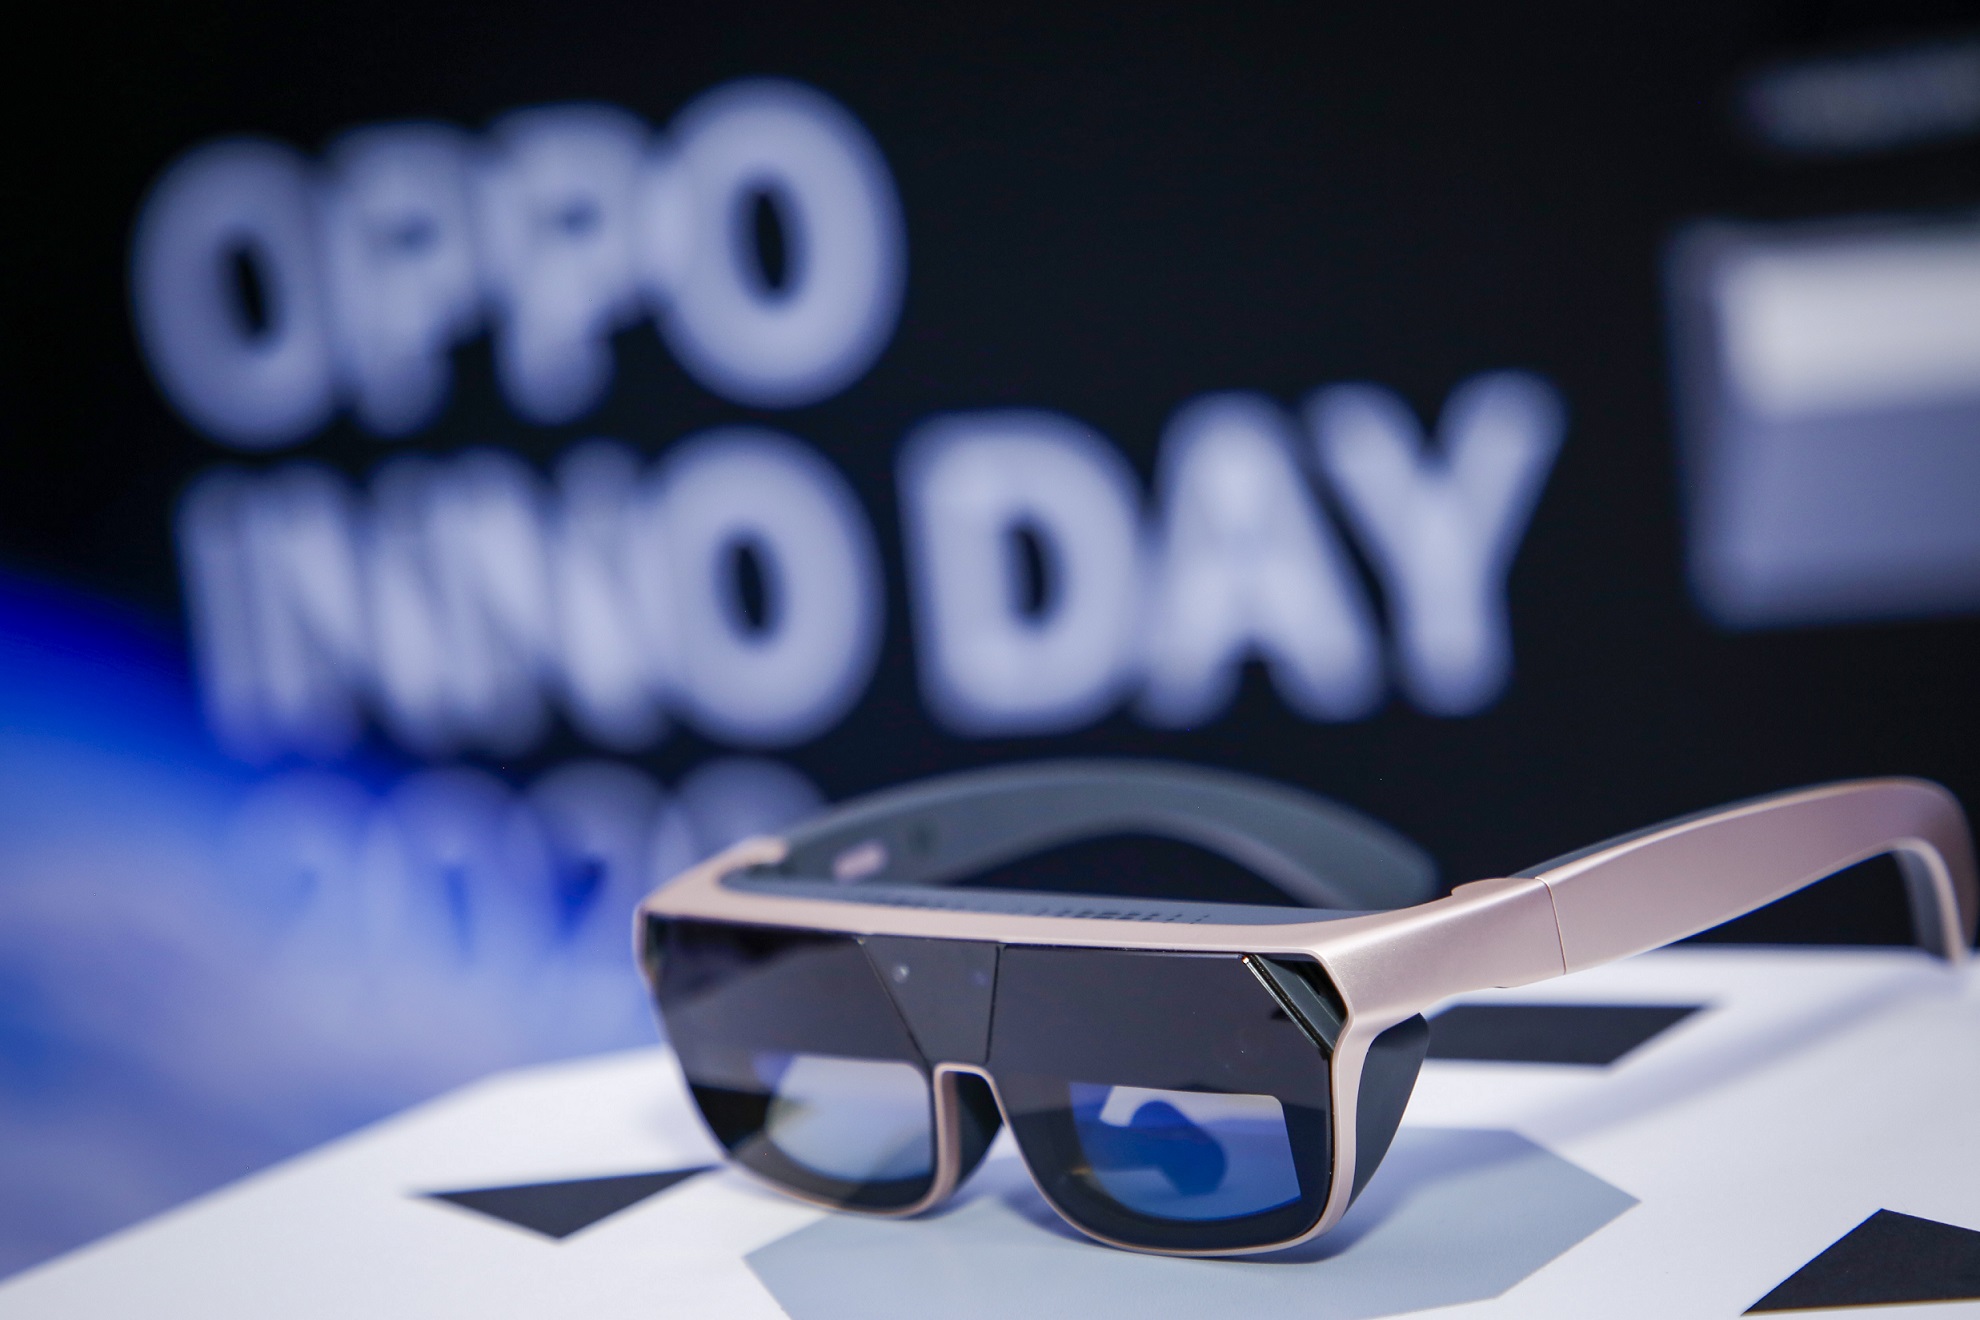 أوبو تكشف عن رؤيتها الجديدة لقطاع التكنولوجيا وتستعرض أحدث ابتكاراتها خلال فعالية "يوم ’أوبو‘ للإبتكار" 2020